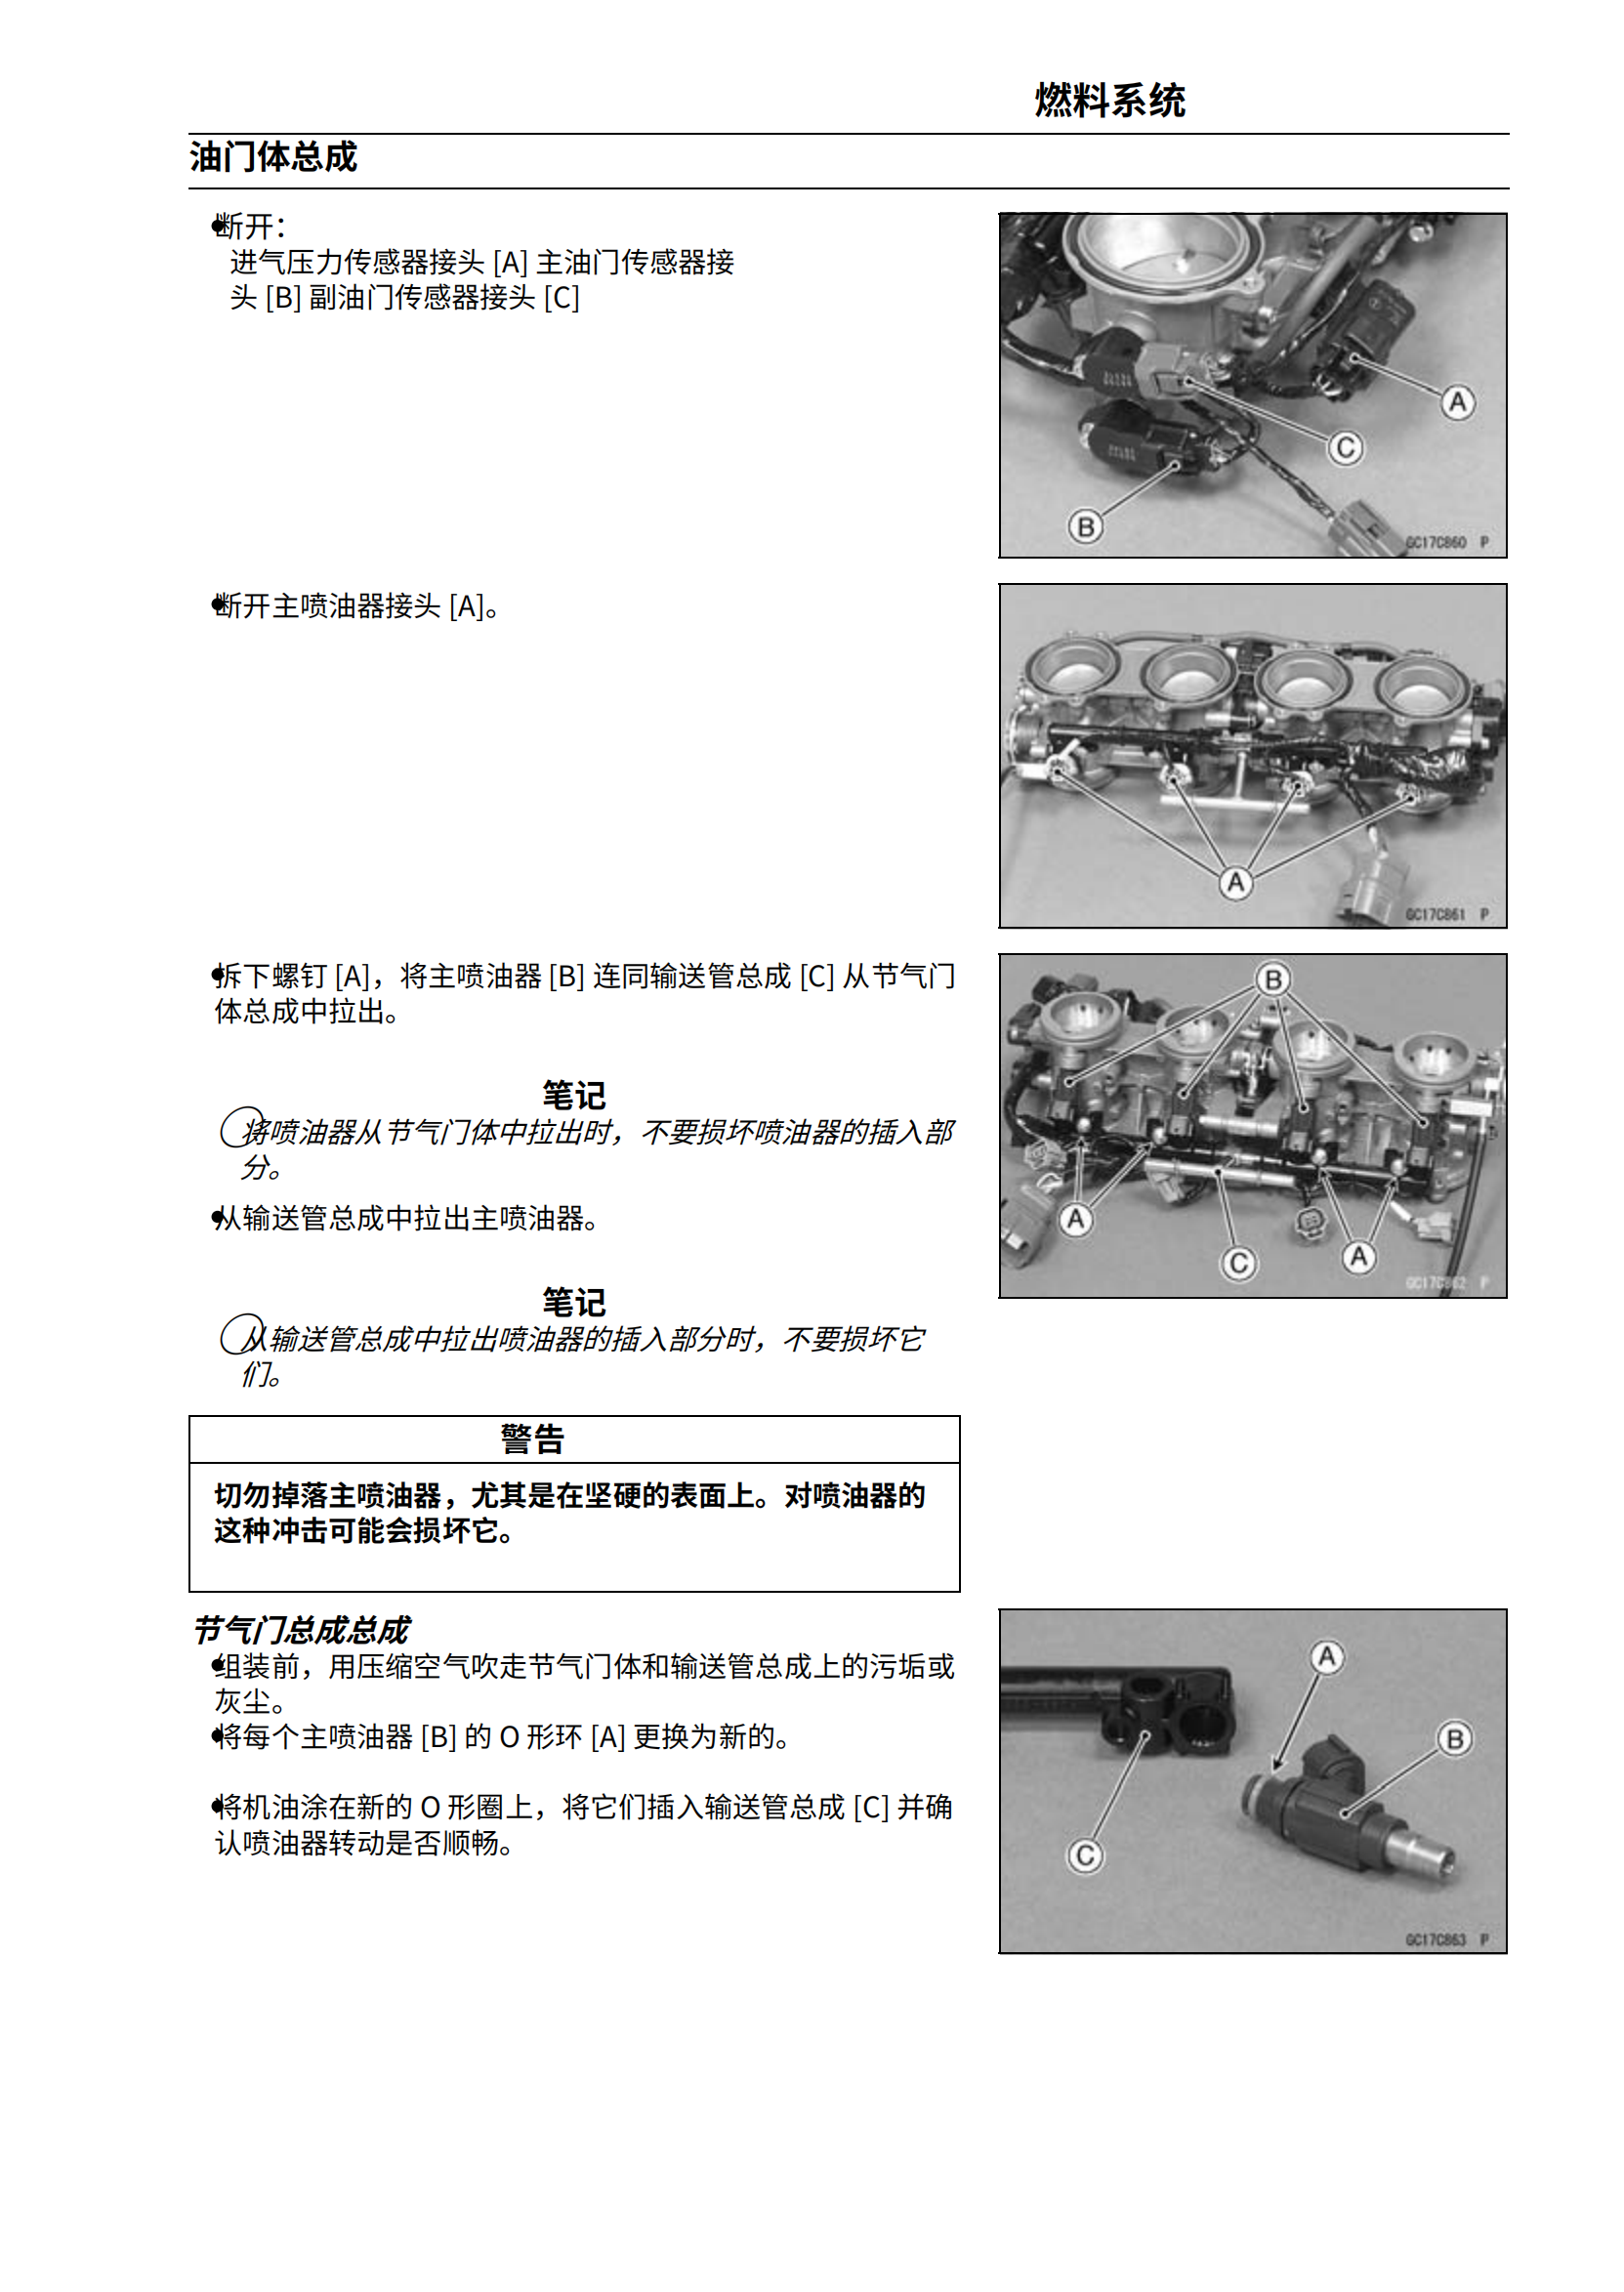 简体中文2009-2010年川崎ZX-10R维修手册大牛kawasaki ninjaZX-10R 维修手册插图3